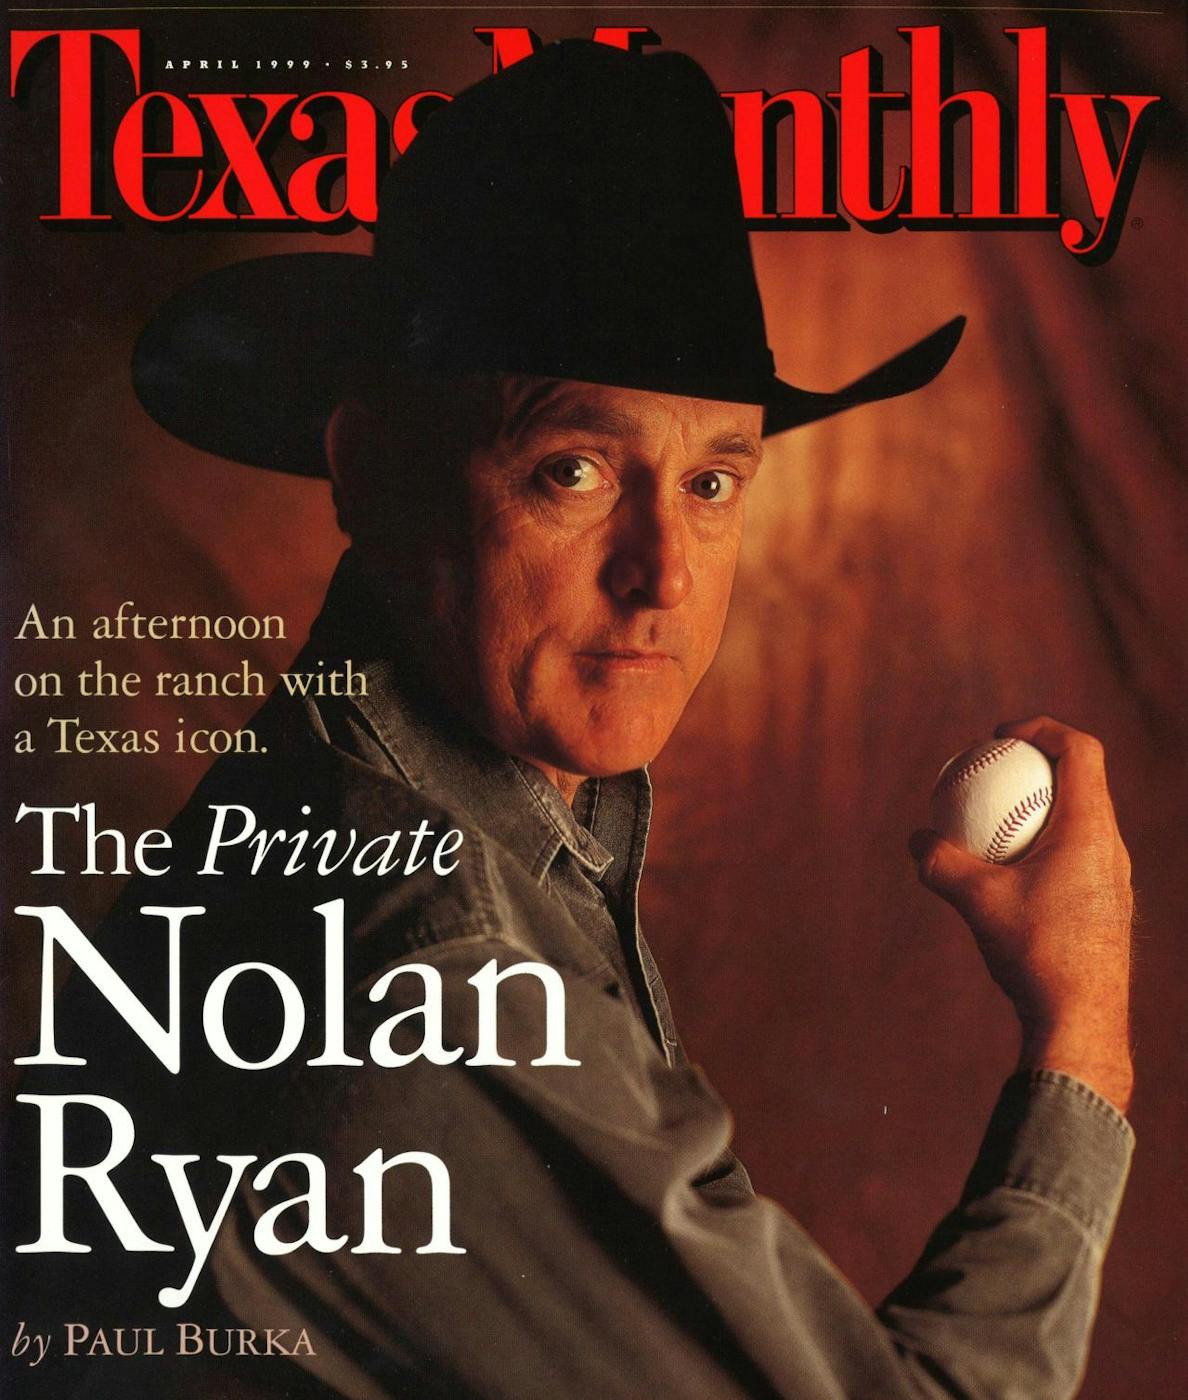 Former Angels bat boy writes book about baseball hero Nolan Ryan